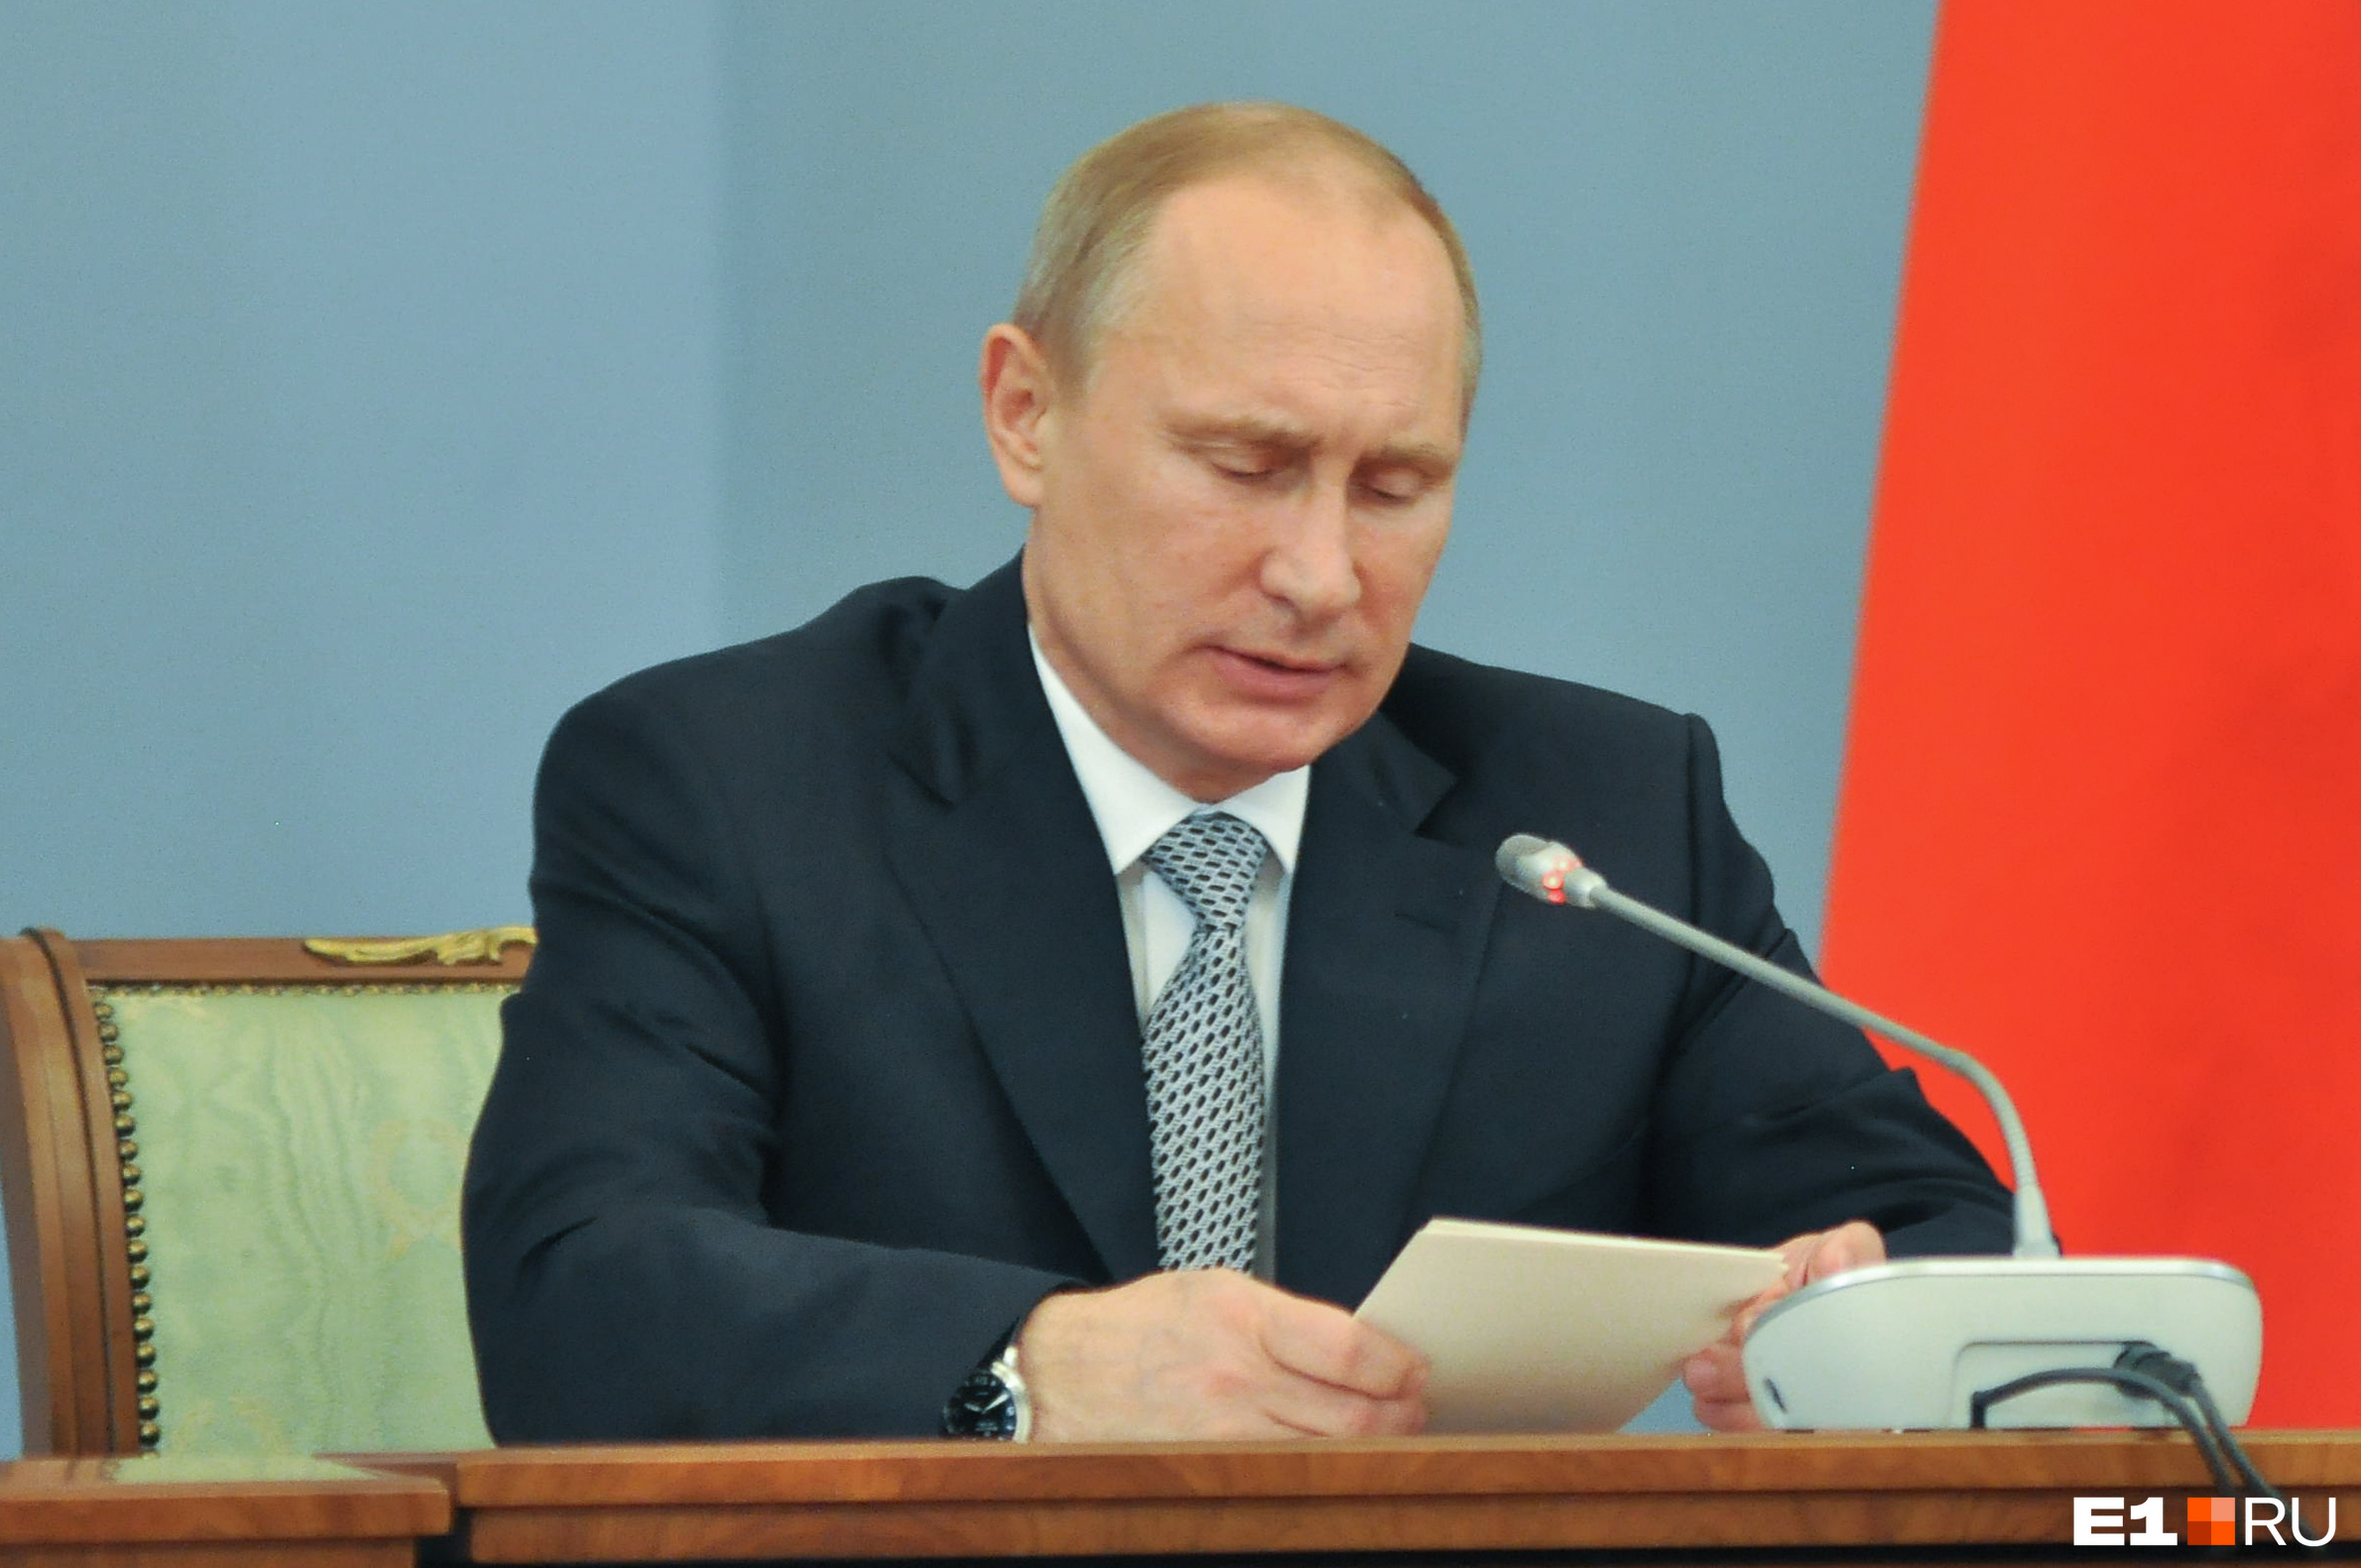 Президент России Владимир Путин назвал Забайкальский край сложным, но похвалил регион за инвестиционно привлекательную экономику